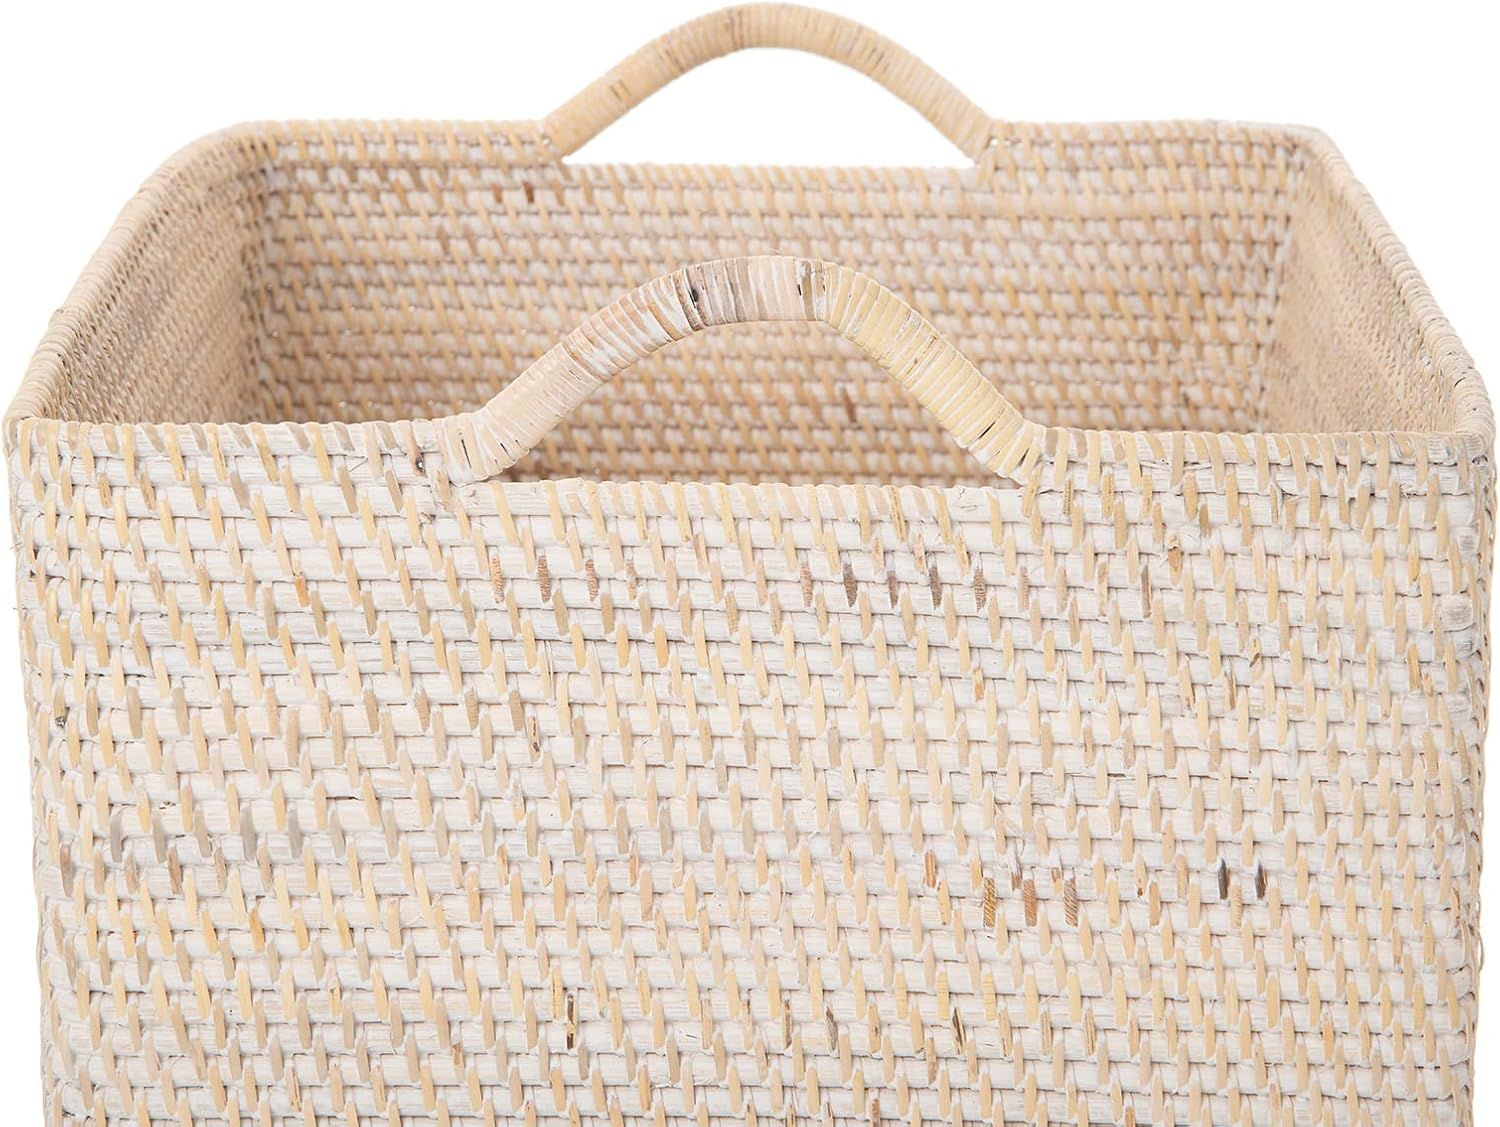 Loma Rectangular Rattan Storage Basket with Handles - Large - White-Wash - Coastal-Inspired Handw... | Amazon (US)